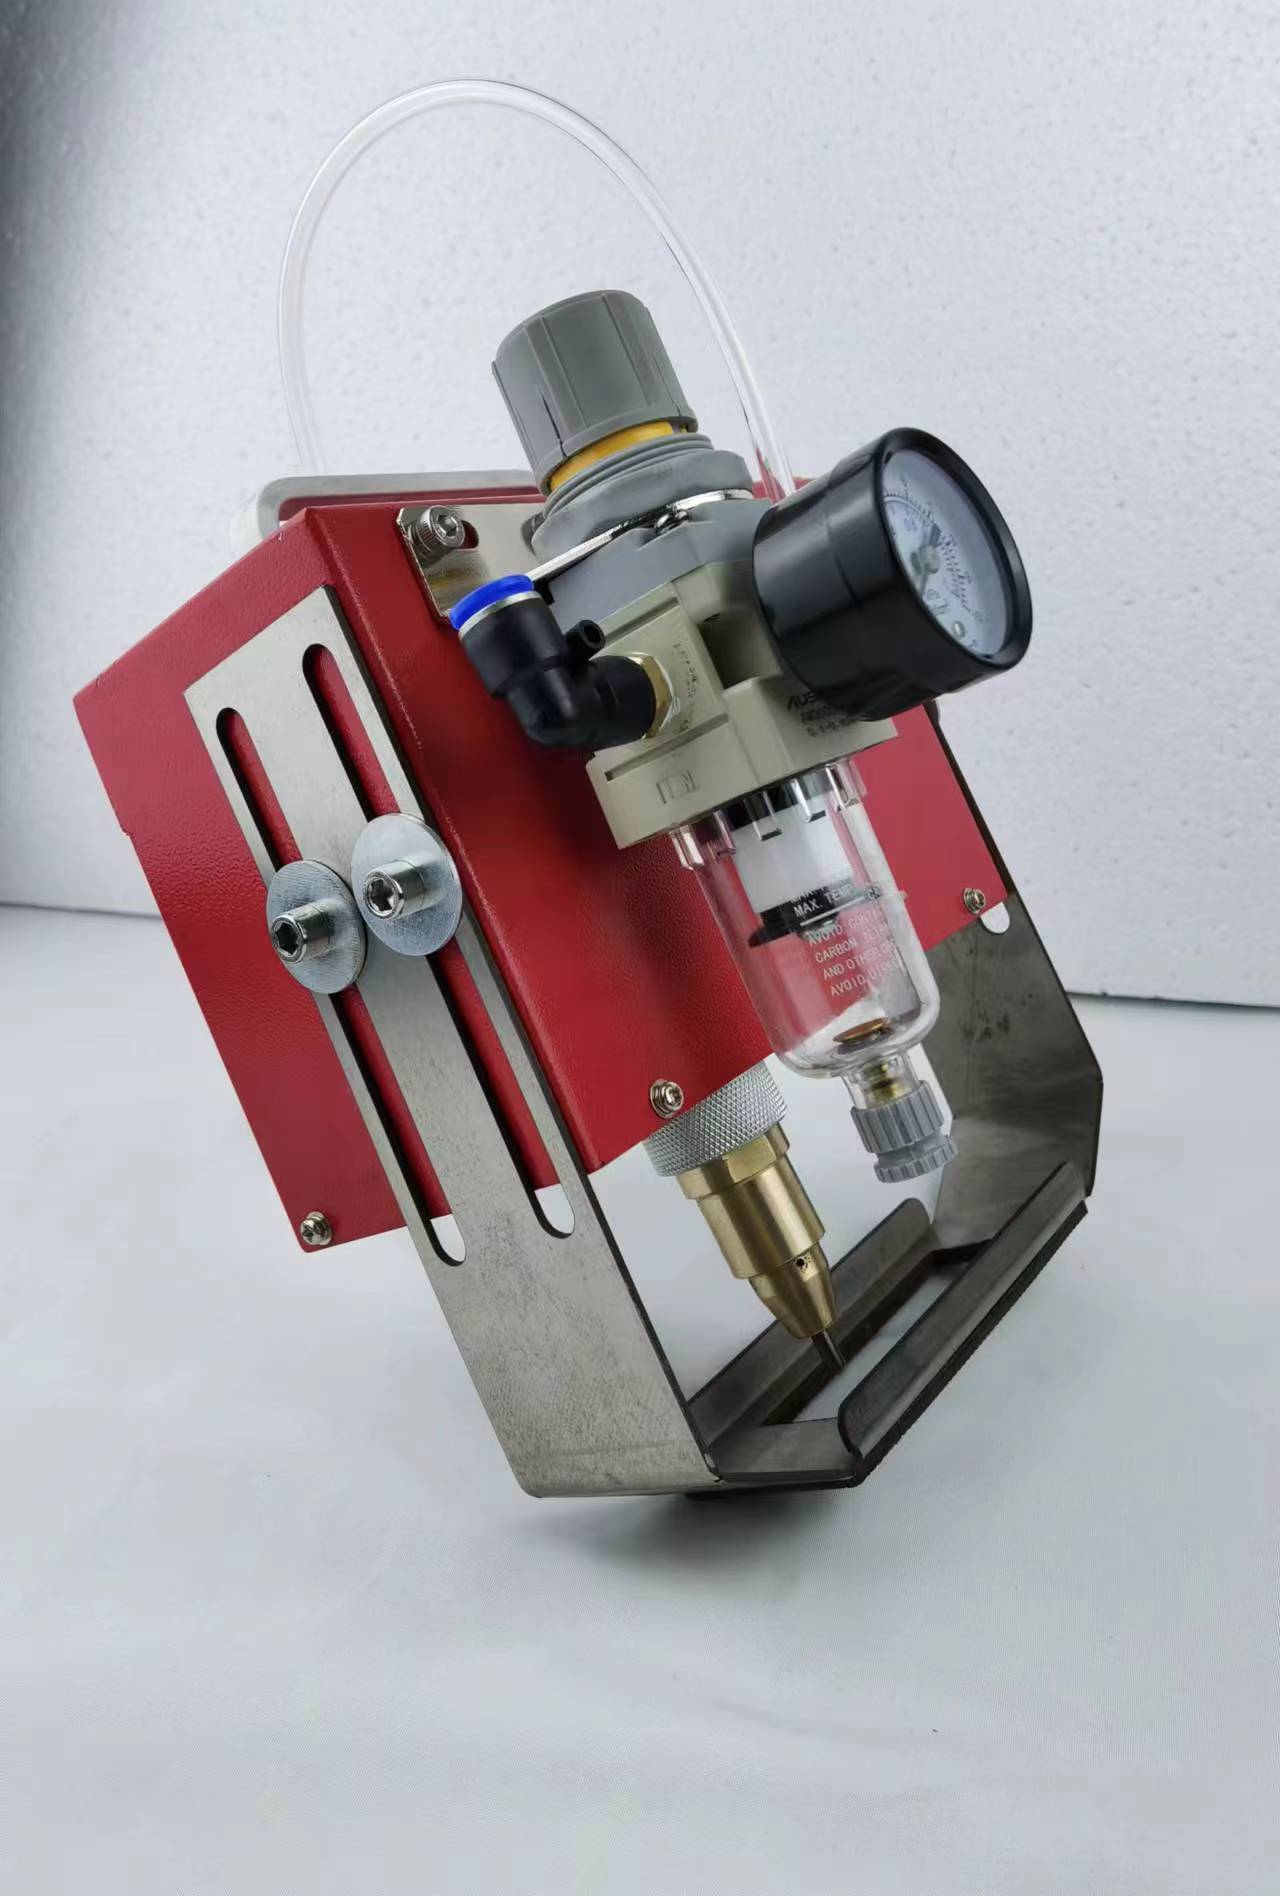 Pneumatic Handhedl Metal Engraving Machine for Metal Engine Hardware Tools